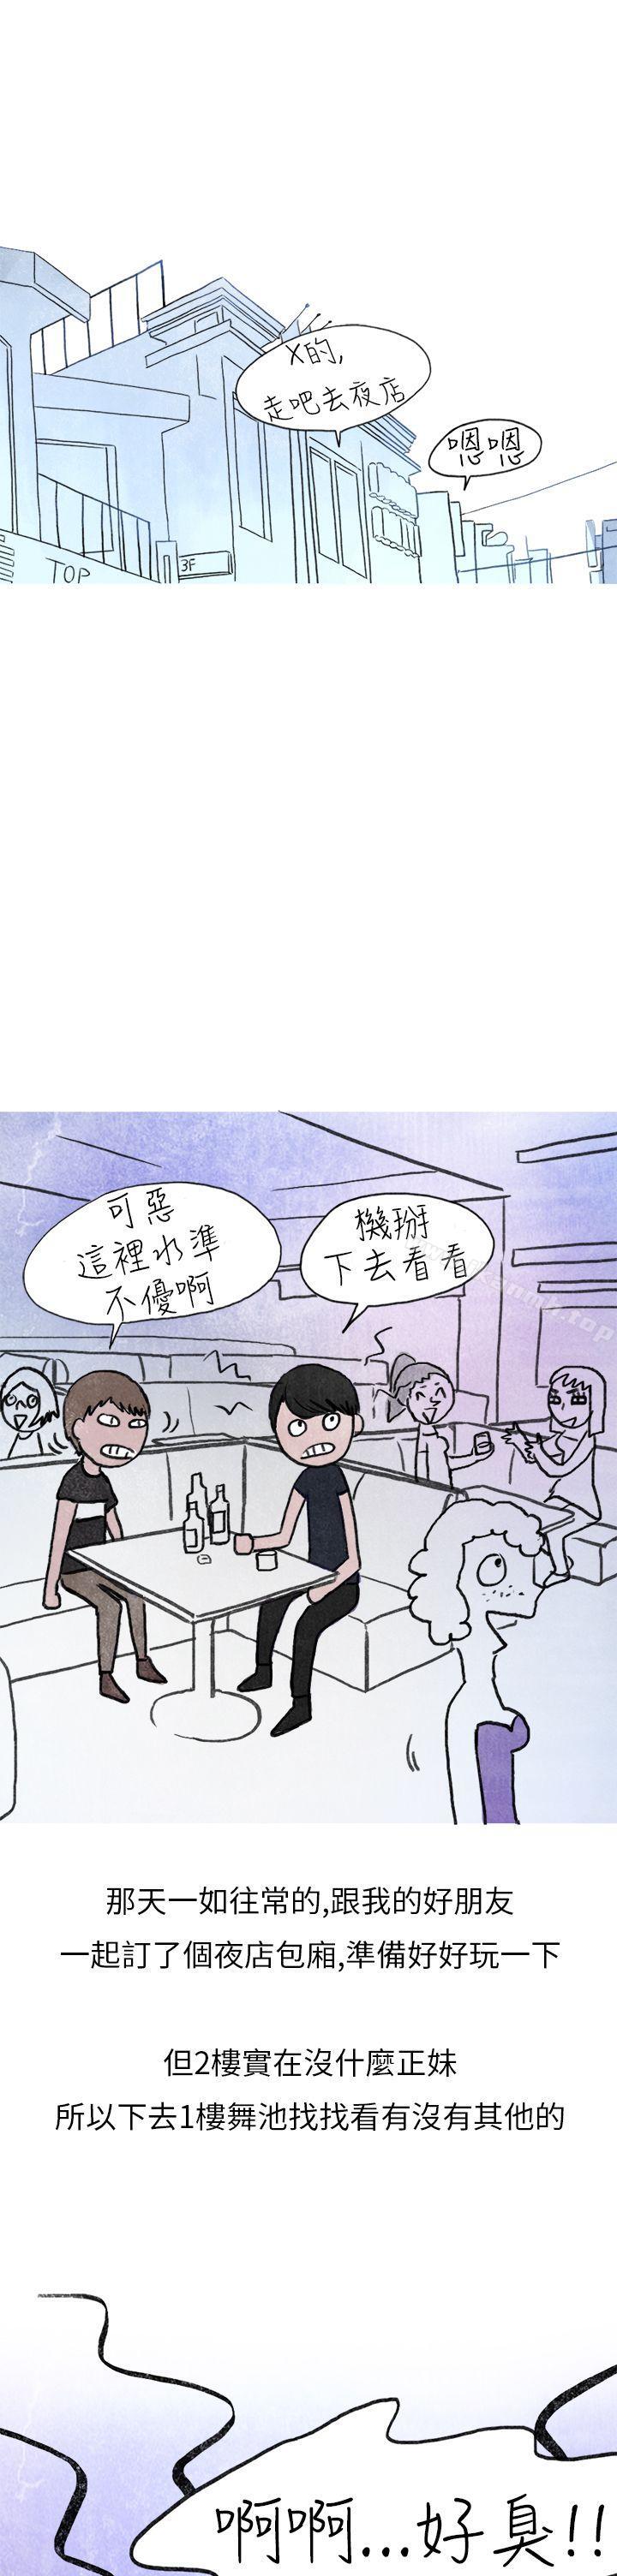 漫画韩国 秘密Story第二季   - 立即阅读 第二季 在夜店遇見的性感女神(上)第6漫画图片